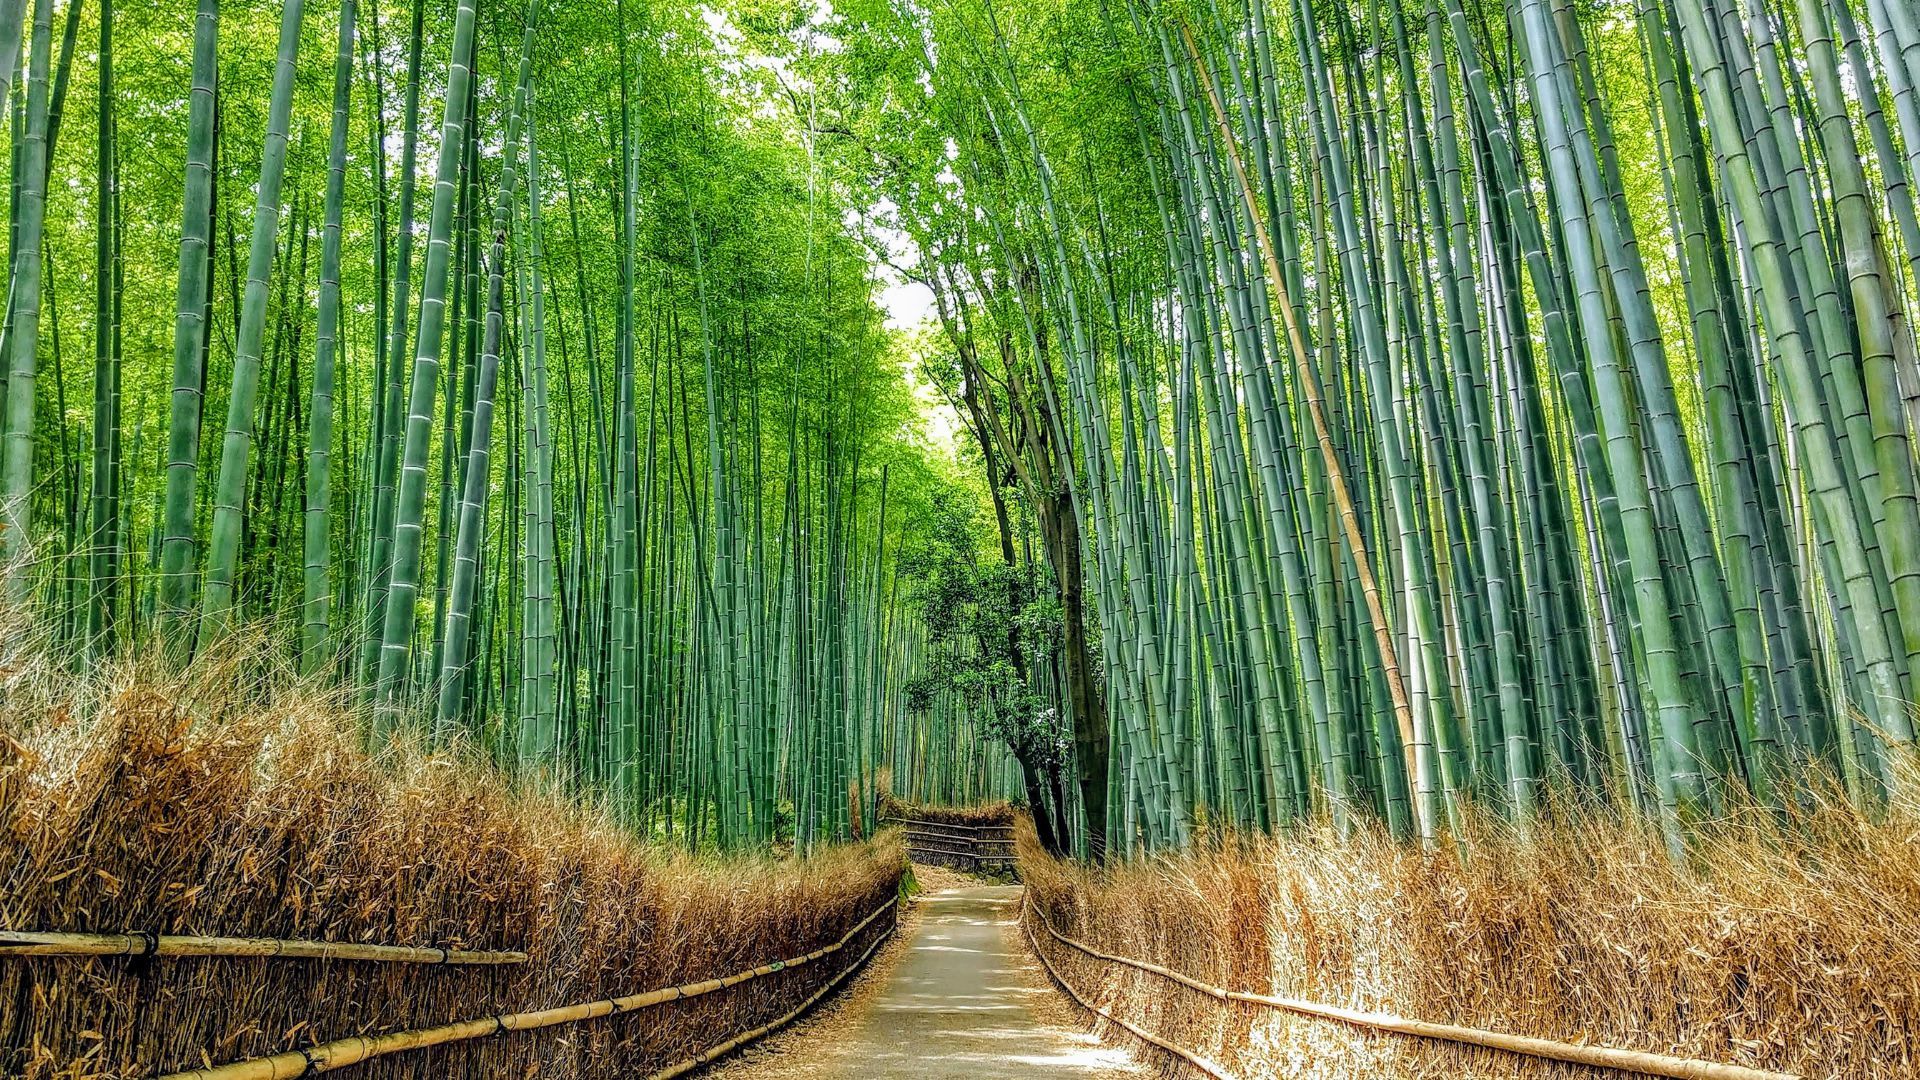 Sagano Bamboo forest in Arashiyama Kyoto Japan